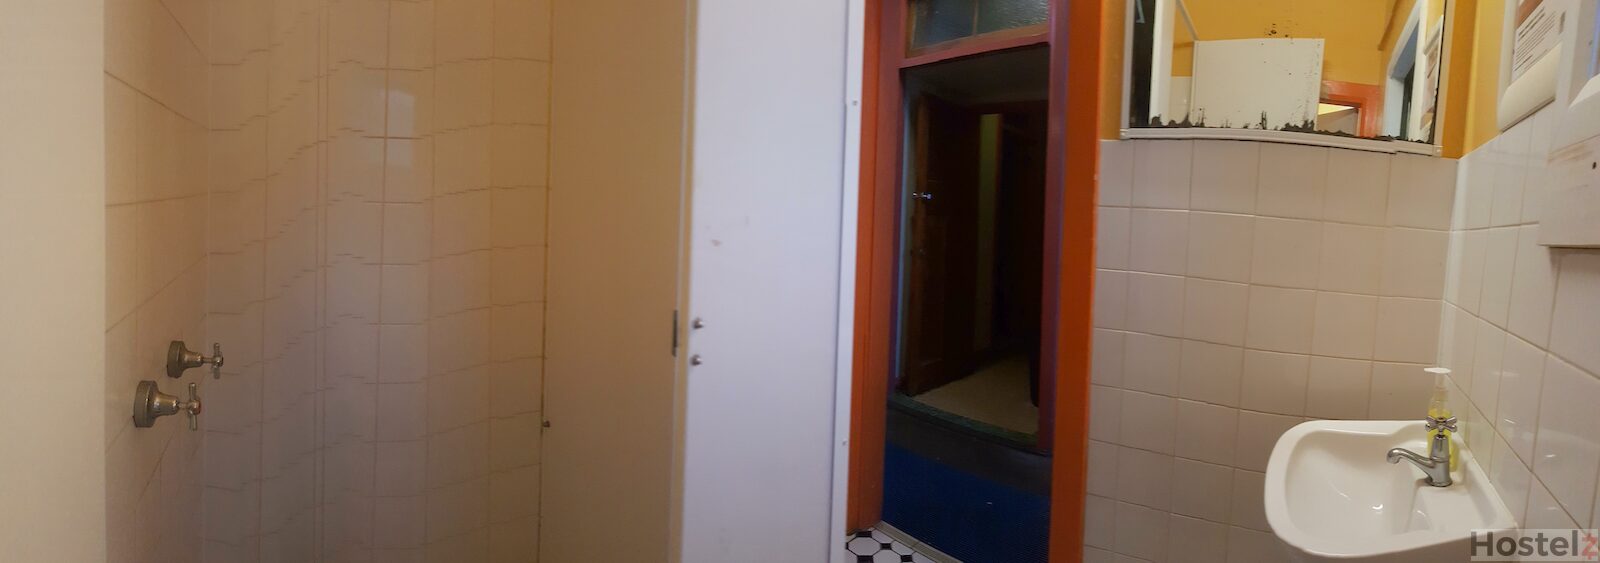 Communal washroom